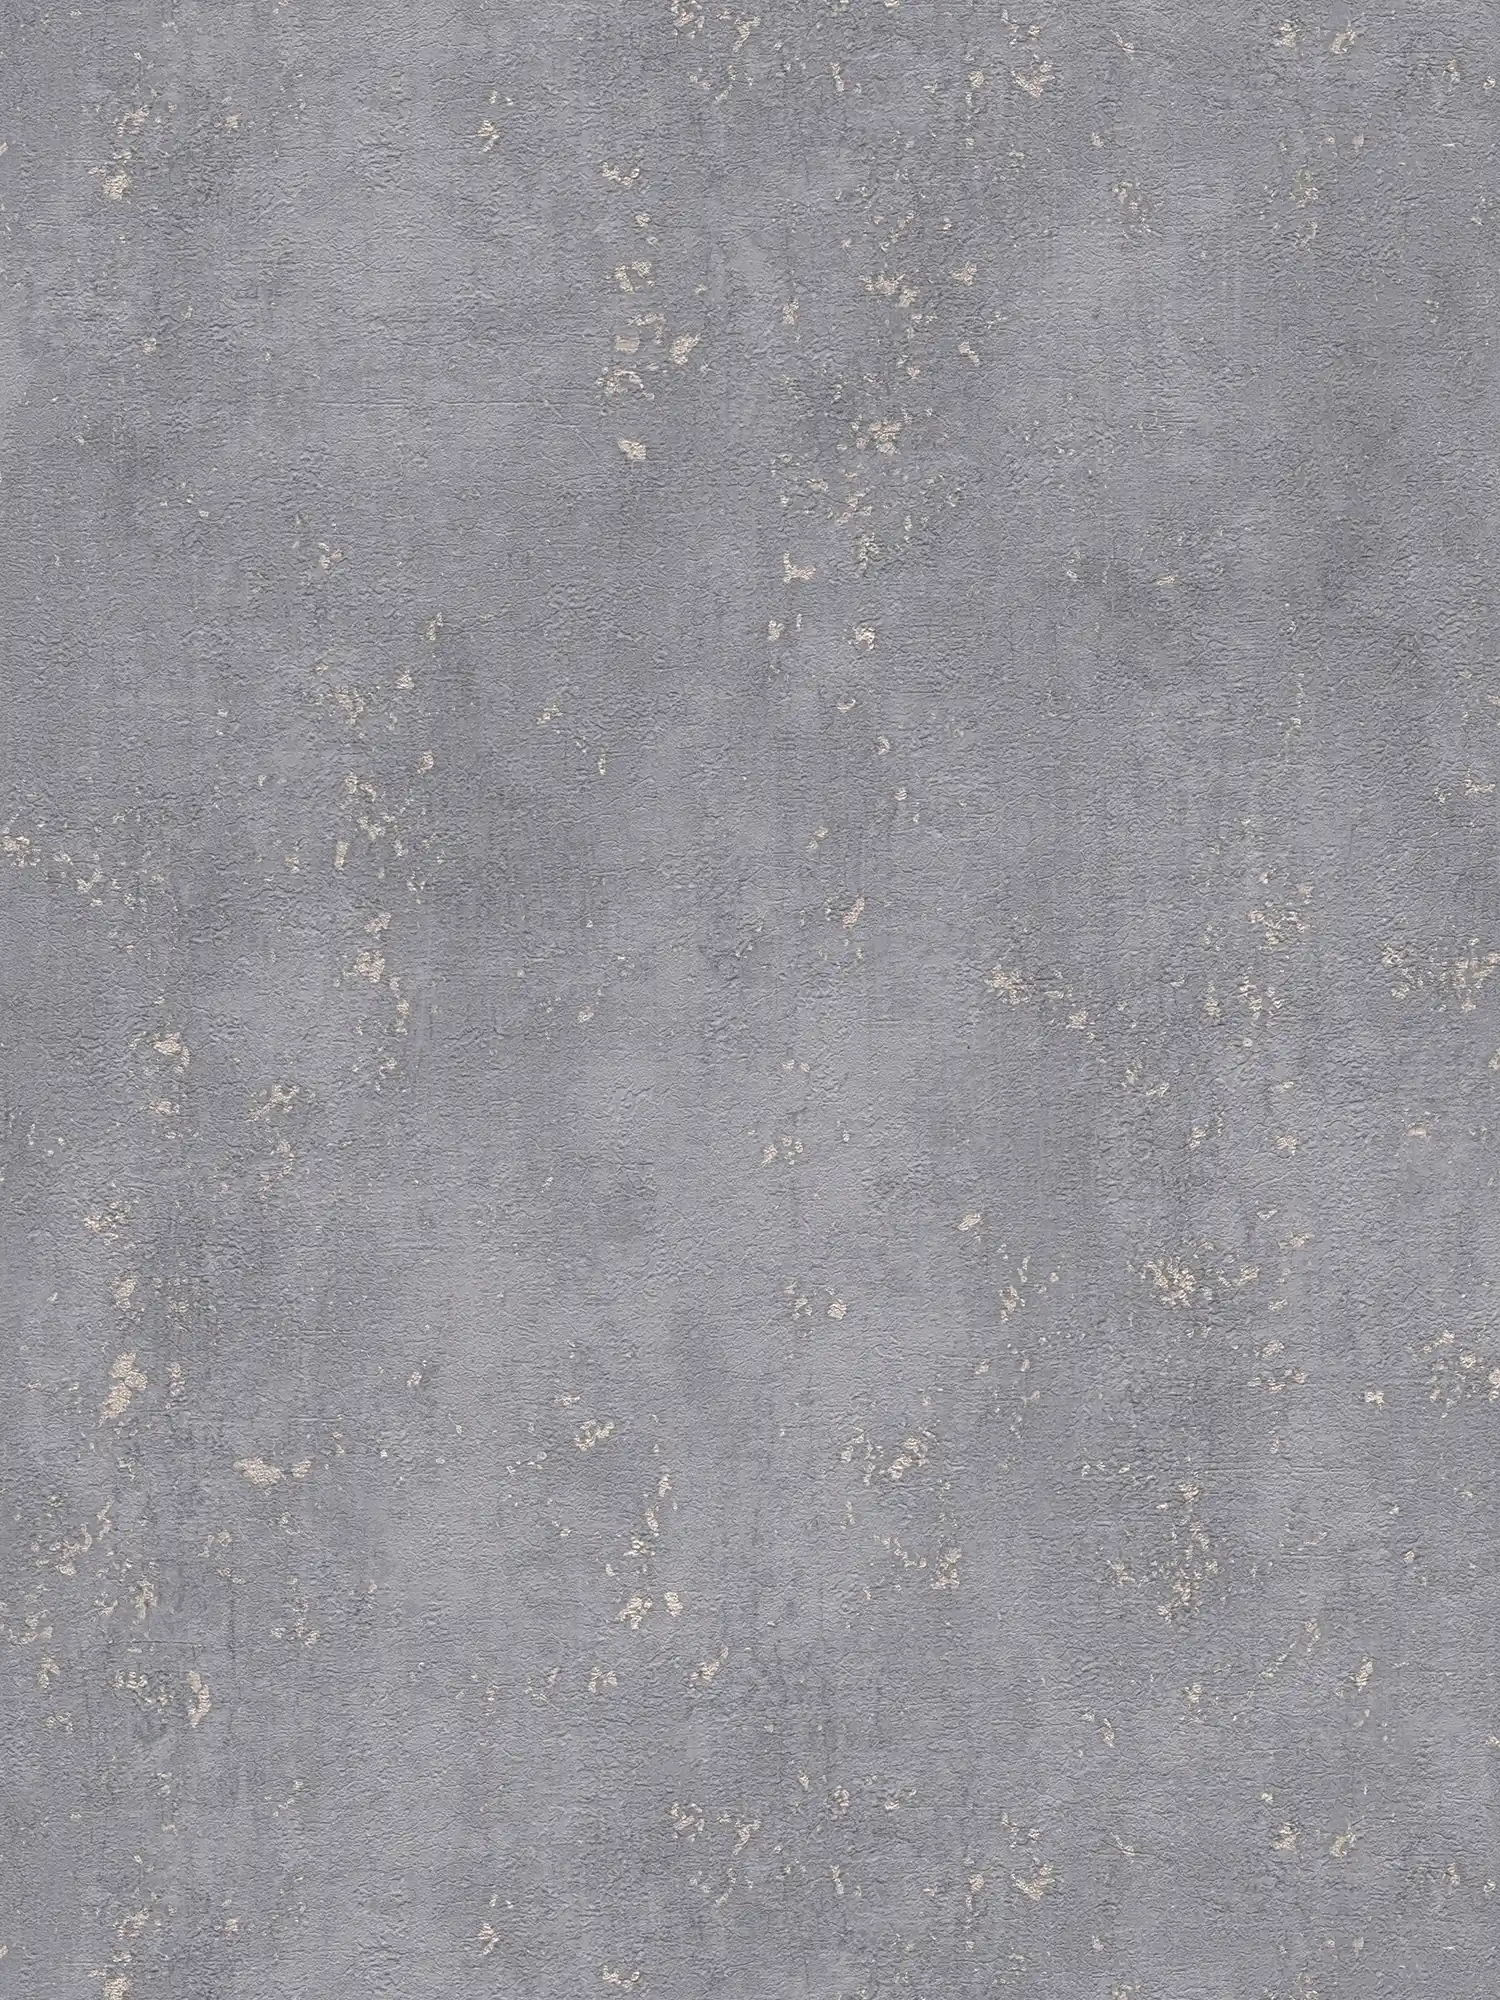 Textured wallpaper grey plaster look with metallic accent - grey
